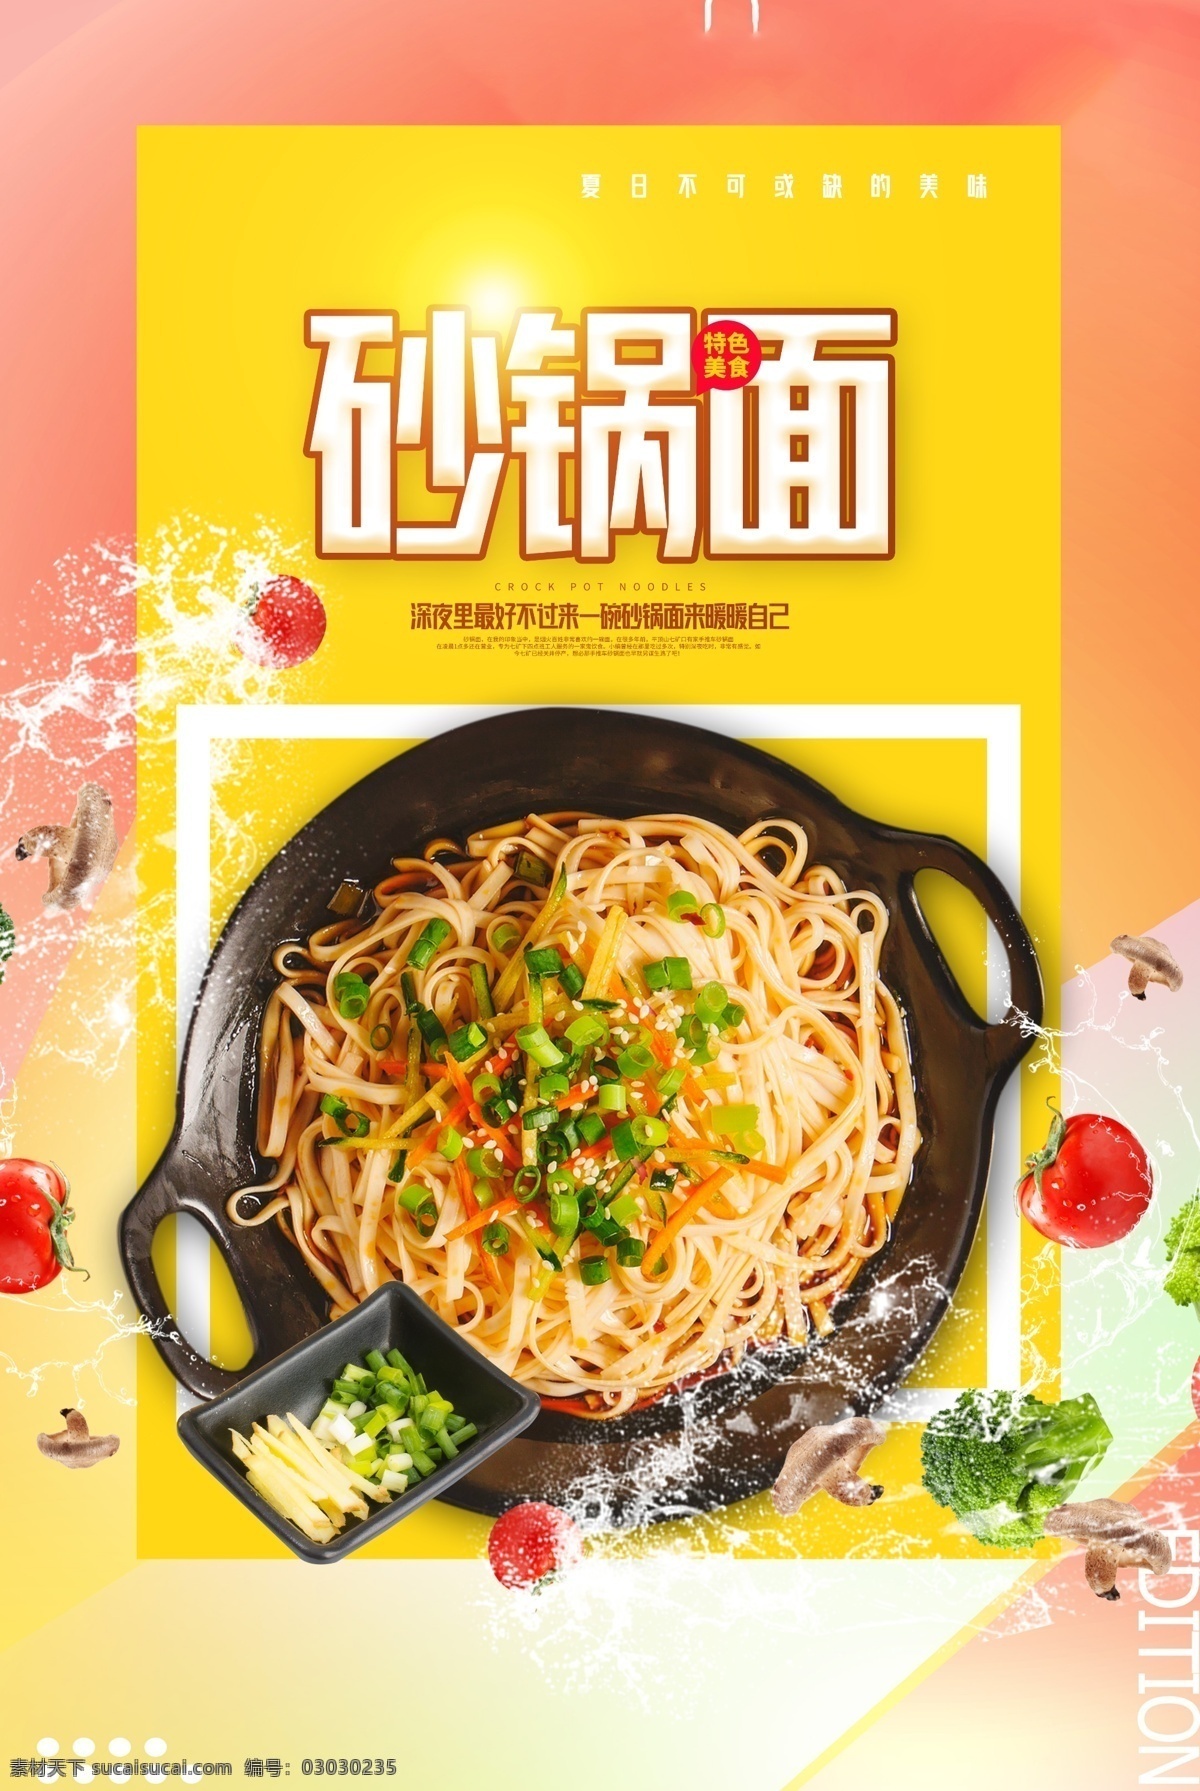 砂锅 美食 活动 宣传海报 素材图片 砂锅面 宣传 海报 餐饮美食 类